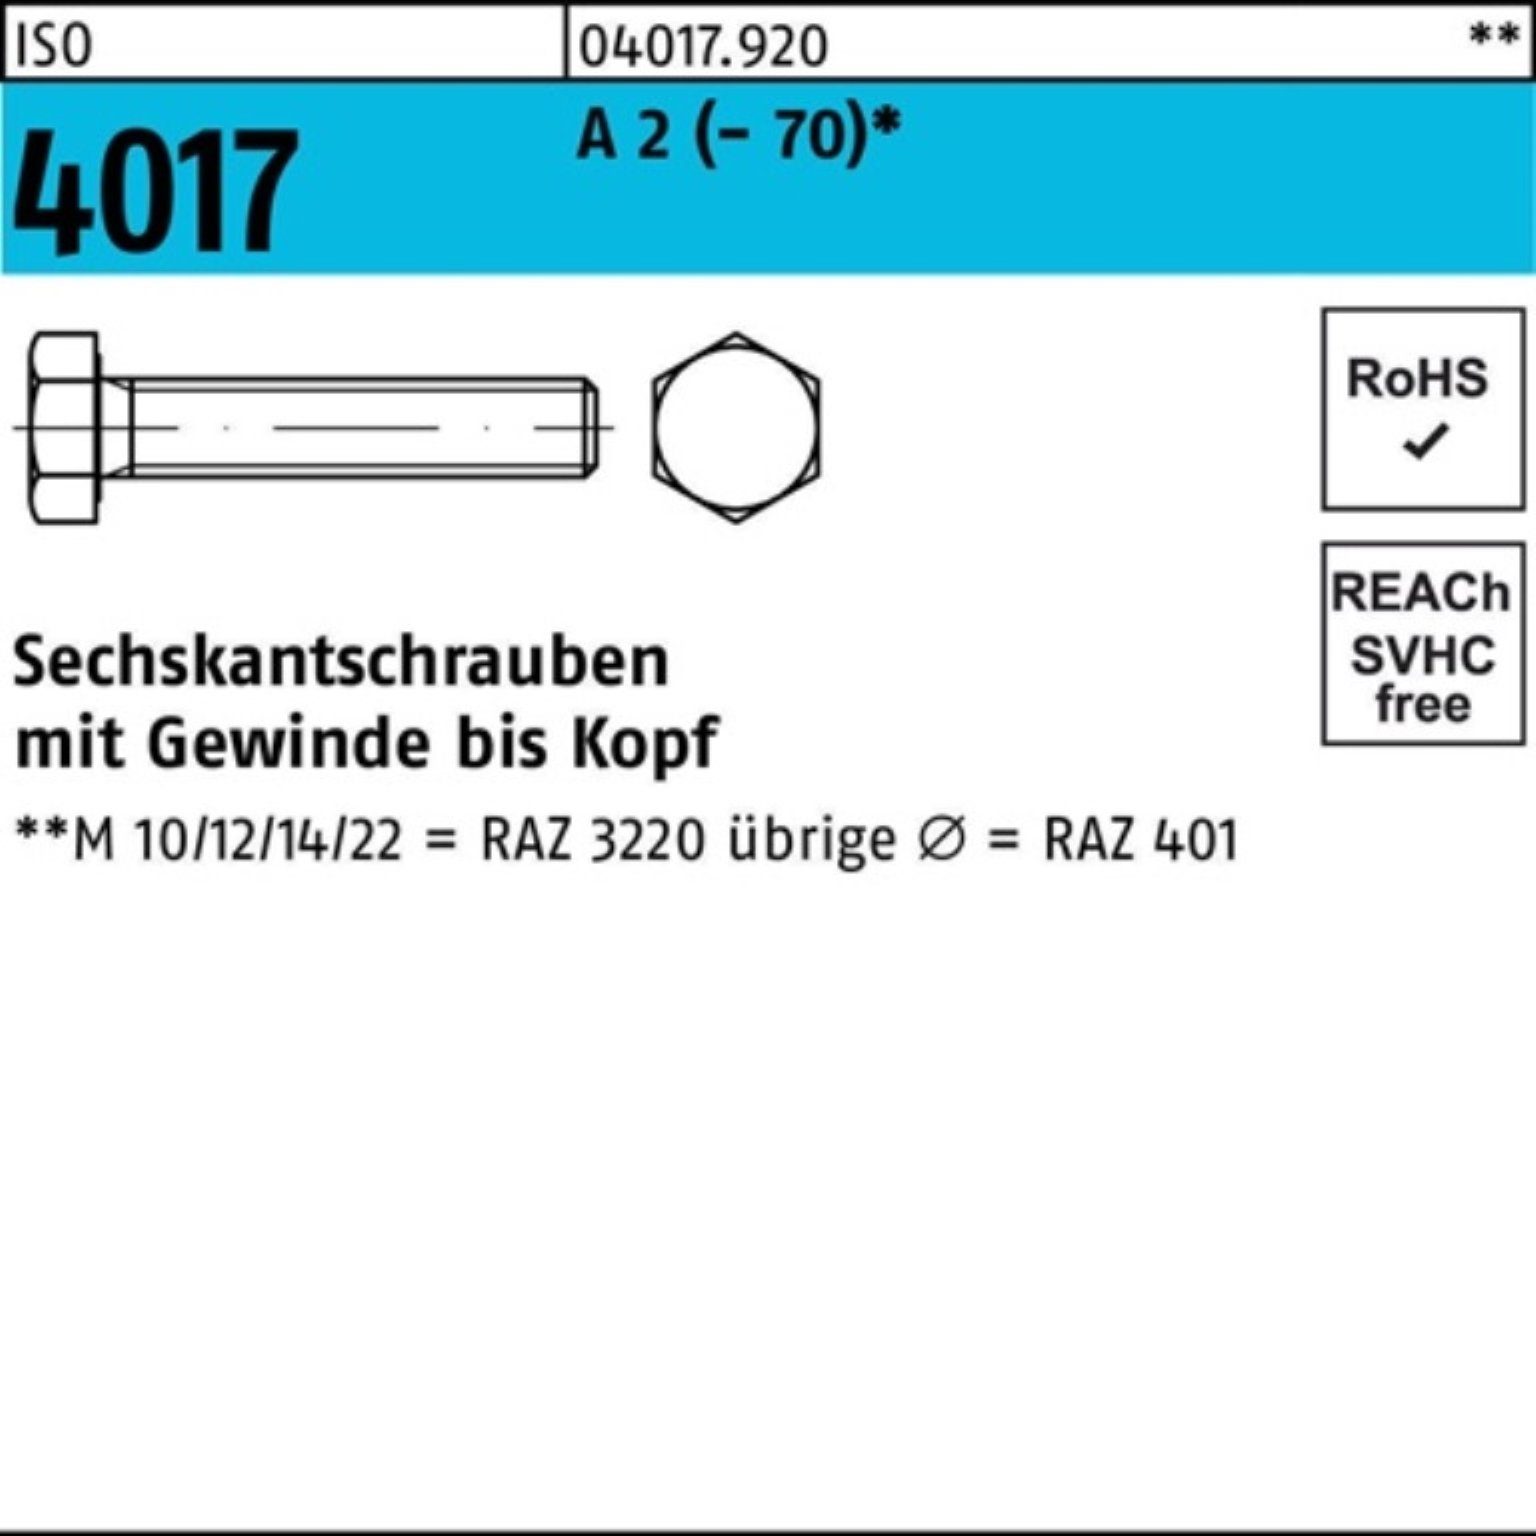 Bufab Sechskantschraube 100er Pack Sechskantschraube ISO 4017 VG M10x 30 A 2 (70) 100 Stück